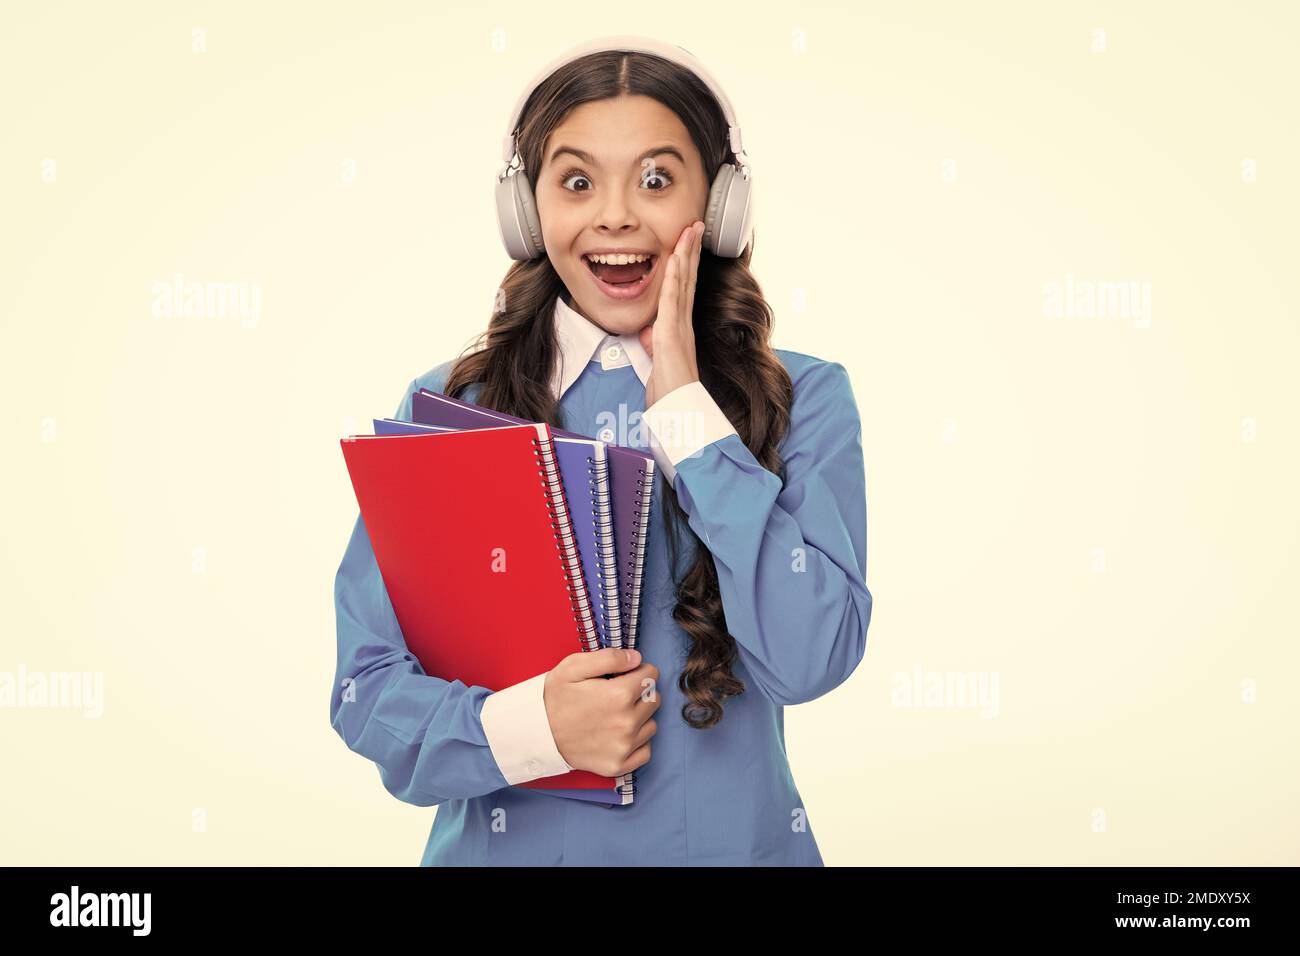 Aufgeregtes Gesicht. Schulkind mit Kopfhörer und Buch isoalted auf weißem Hintergrund. Staunend Ausdruck, fröhlich und froh. Stockfoto